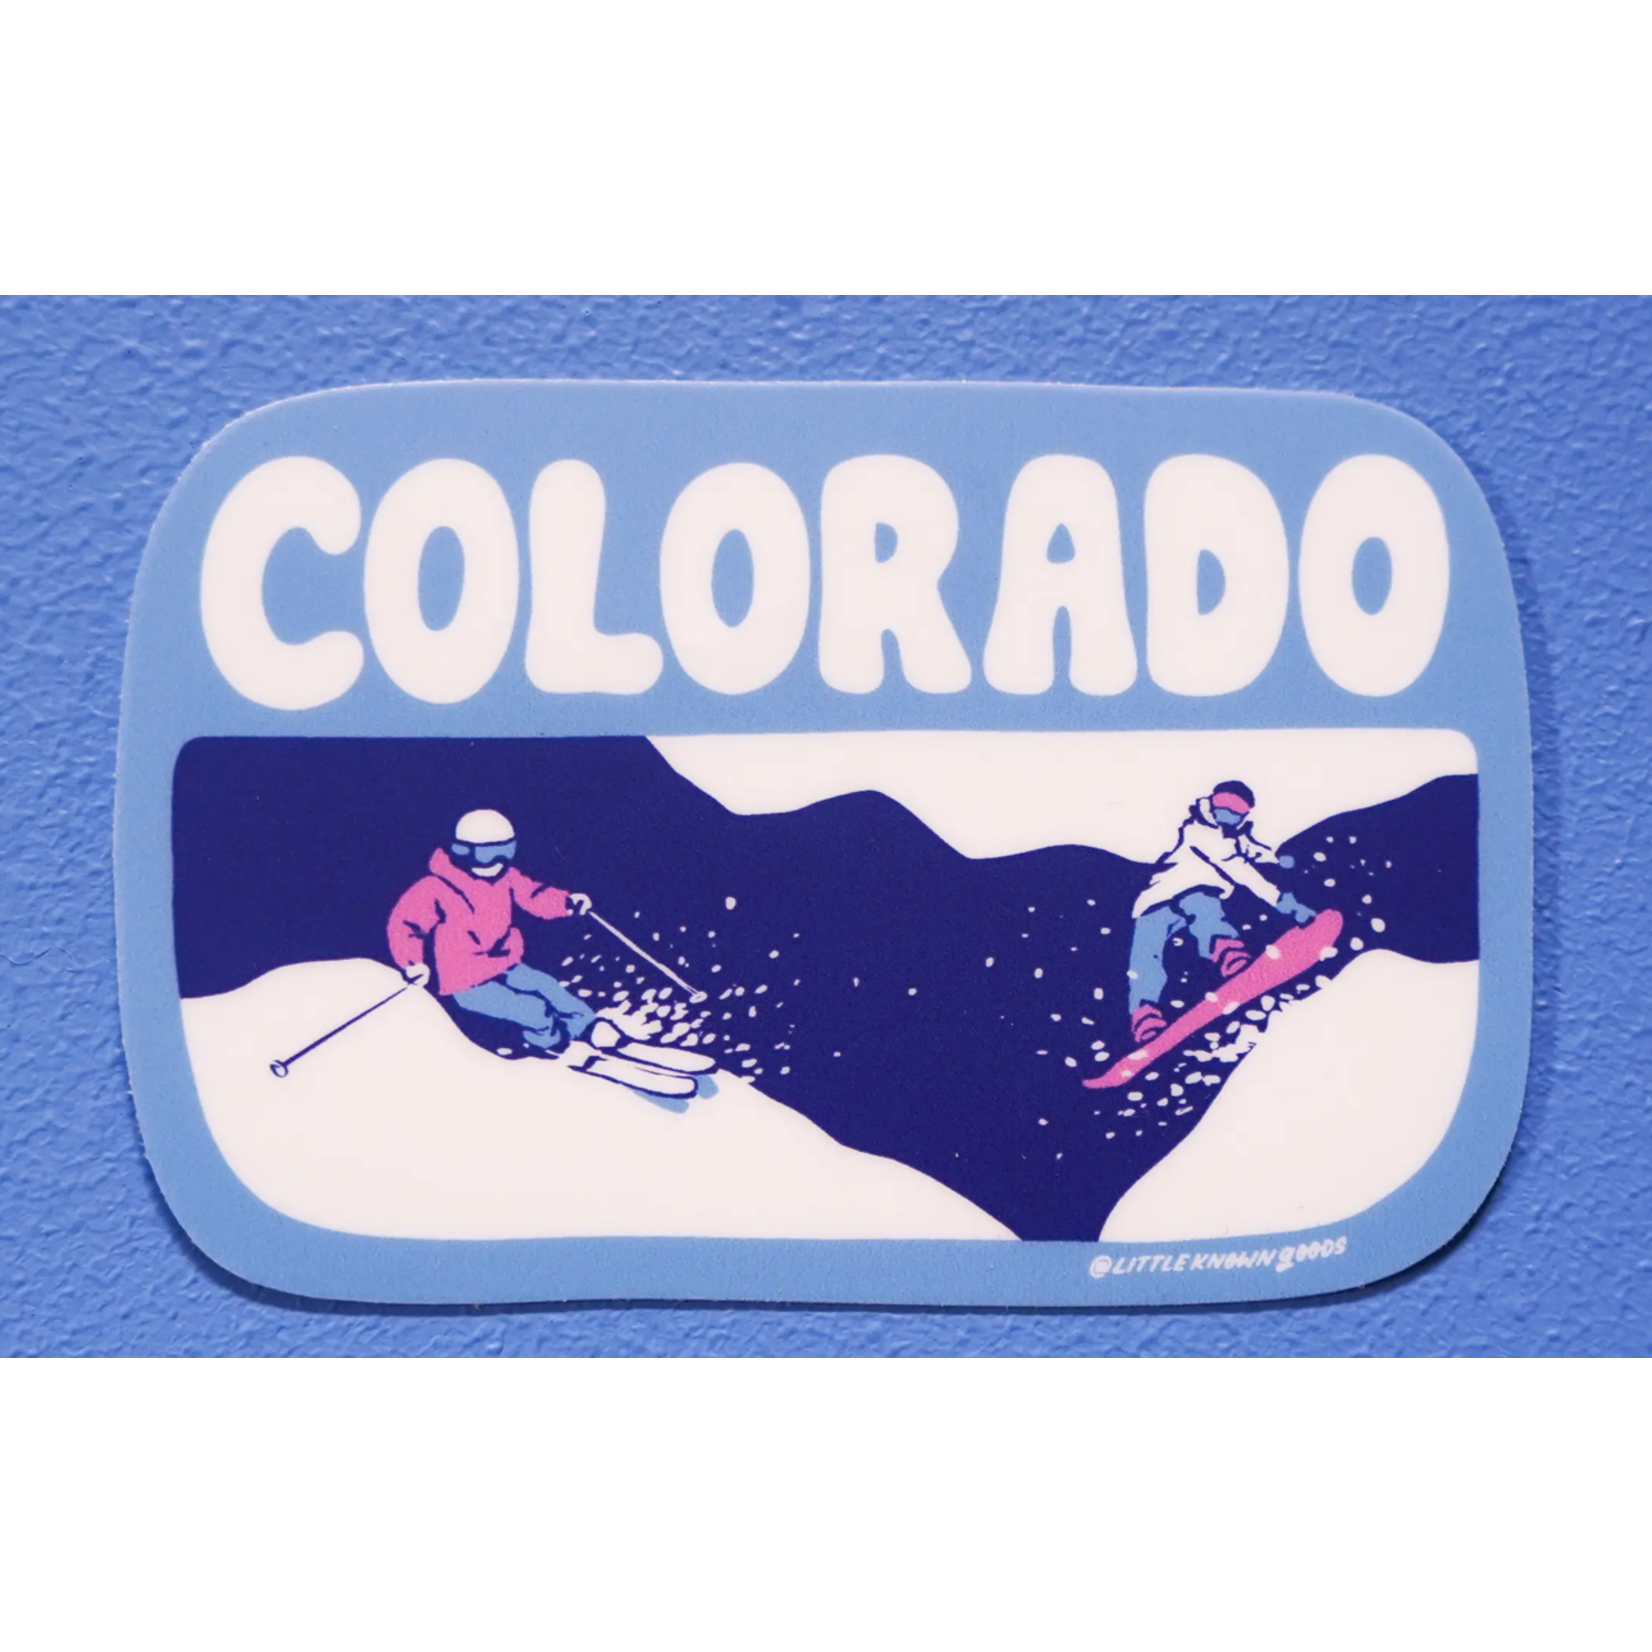 Little Known Goods Little Known Goods Colorado Ski Sticker